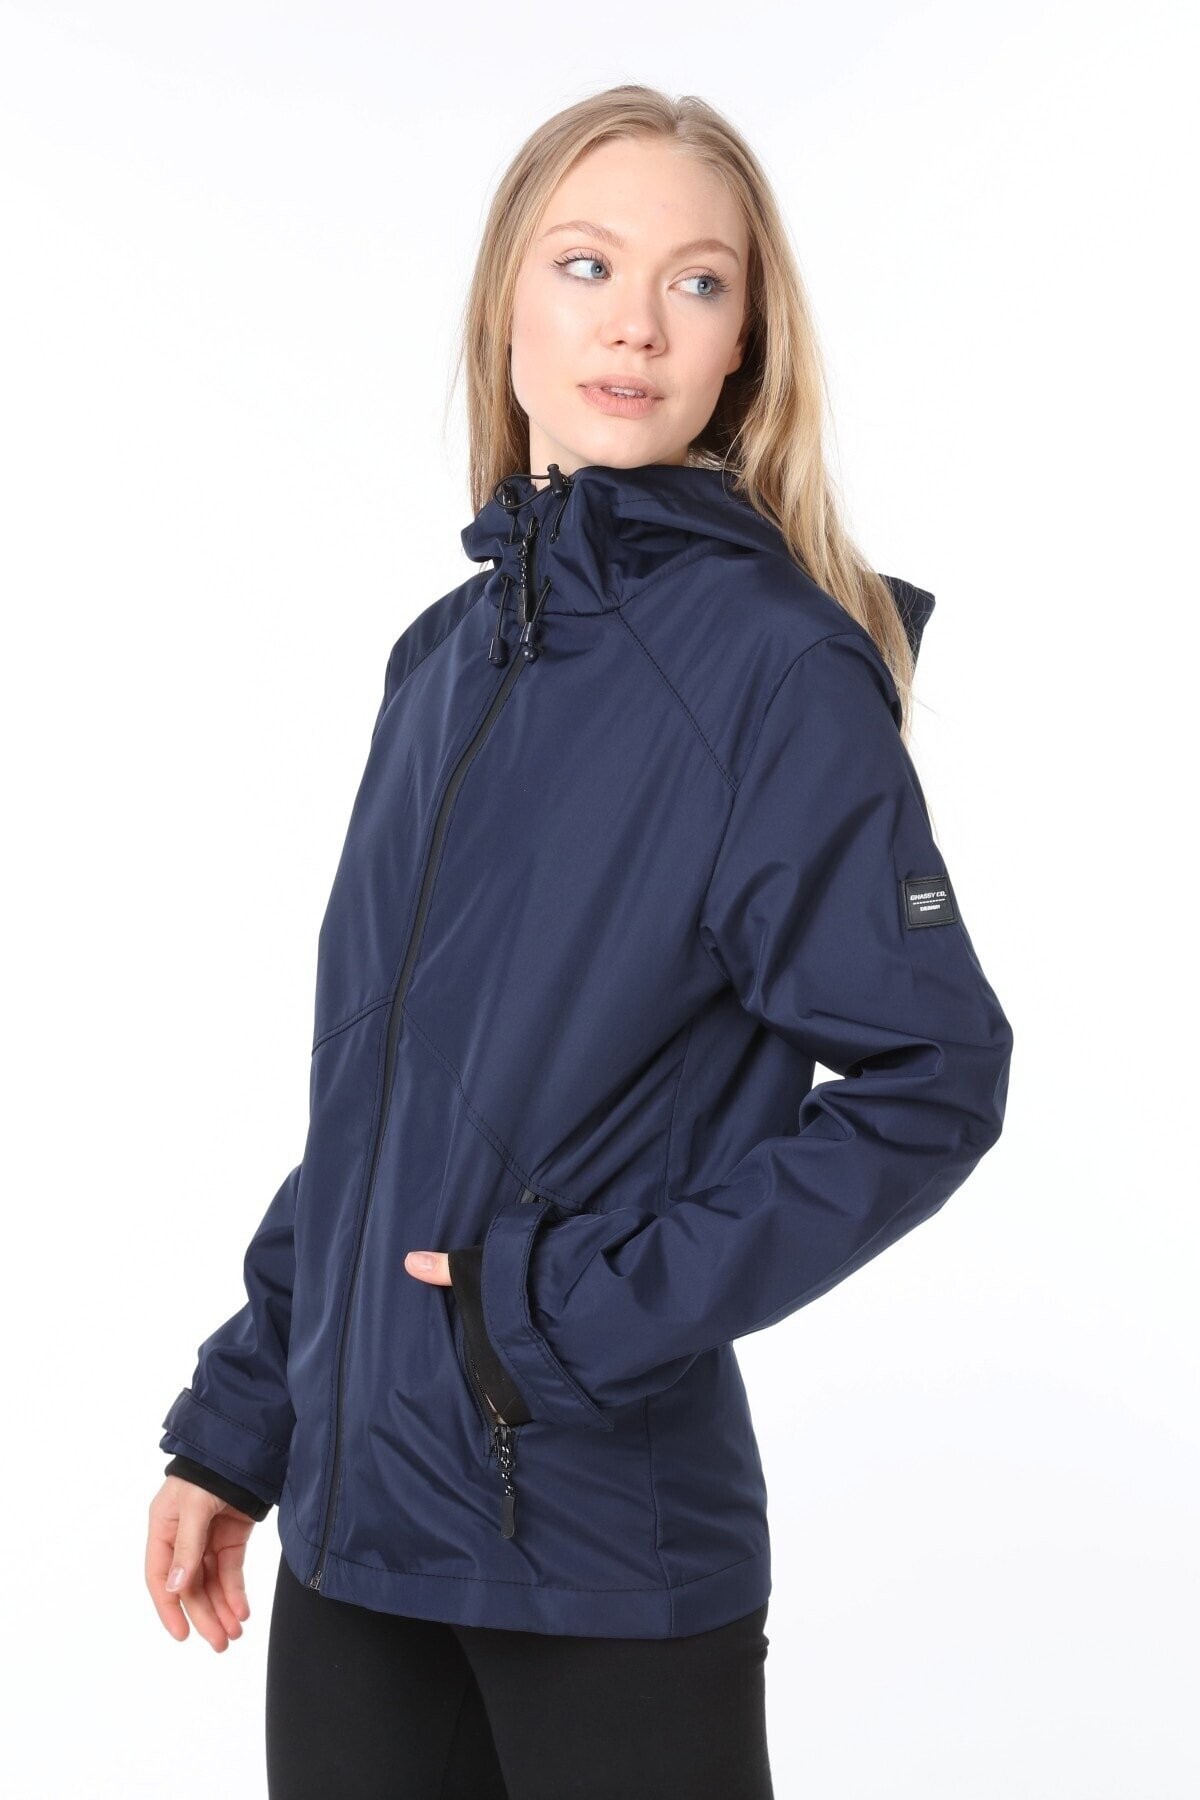 Ghassy Co.Kadın Rüzgarlık/Yağmurluk Omuz Detaylı Mevsimlik Taş Spor Ceket - LACİVERT